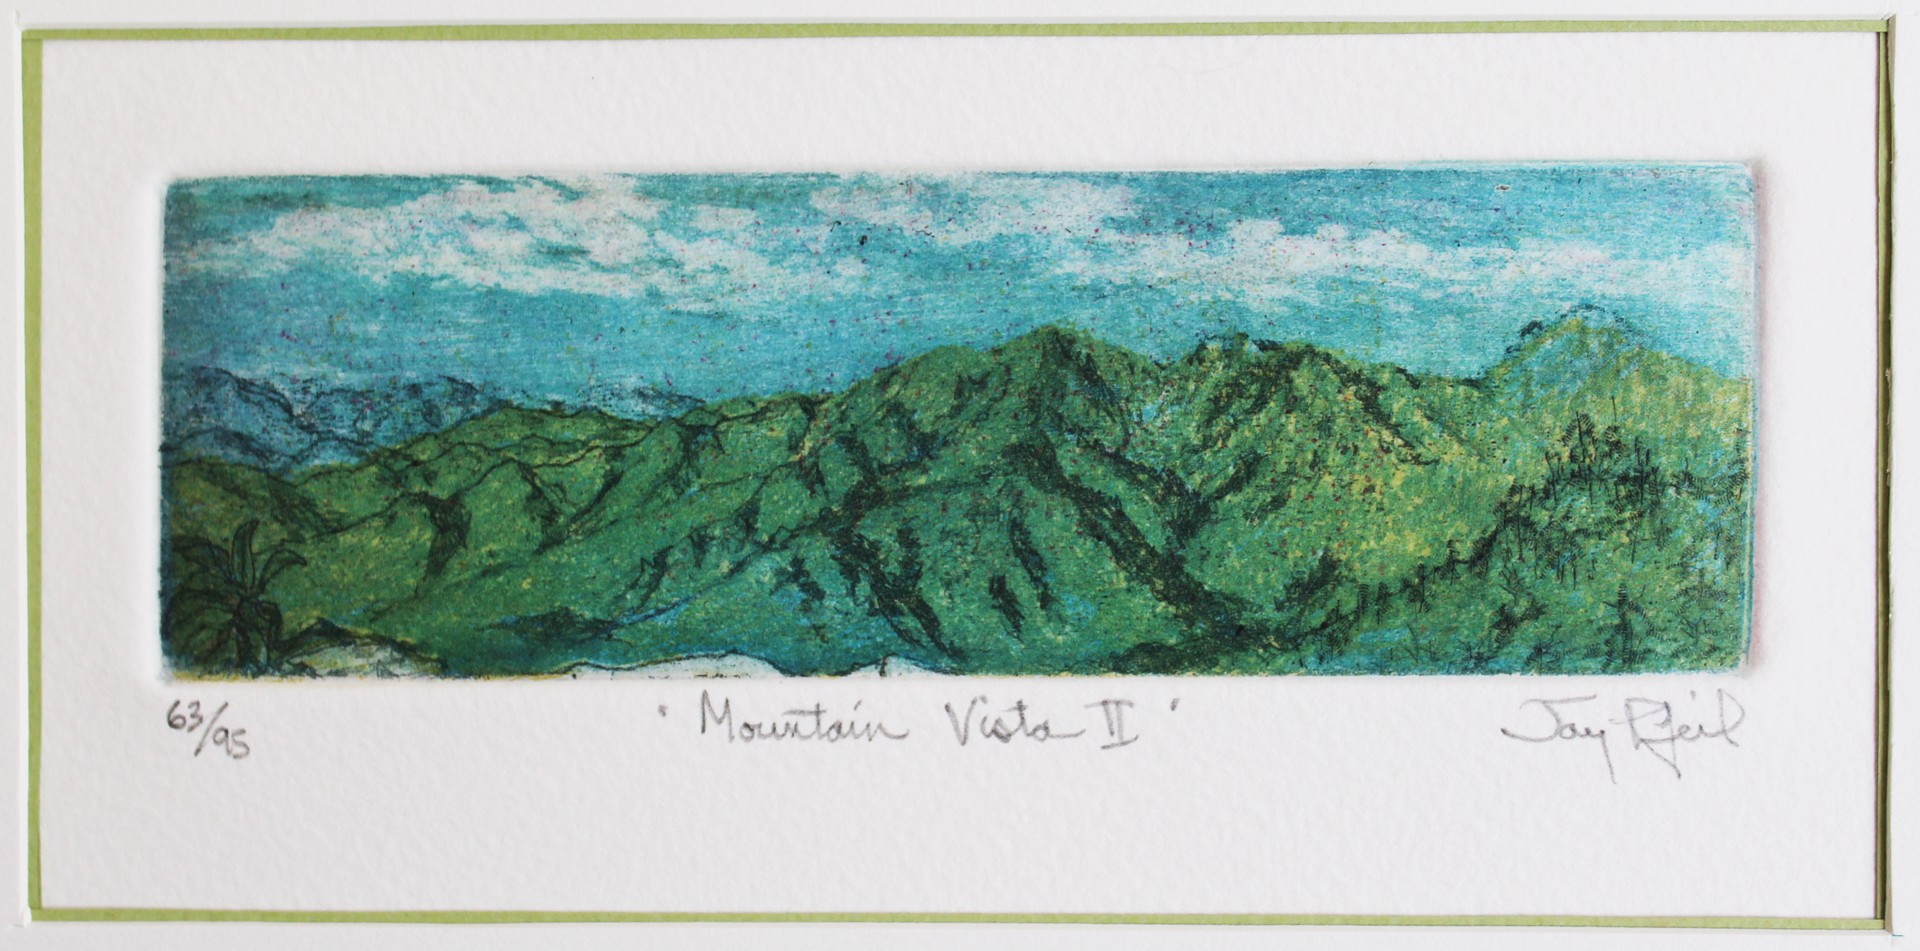 Mountain Vista II (Unframed) by Jay Pfeil